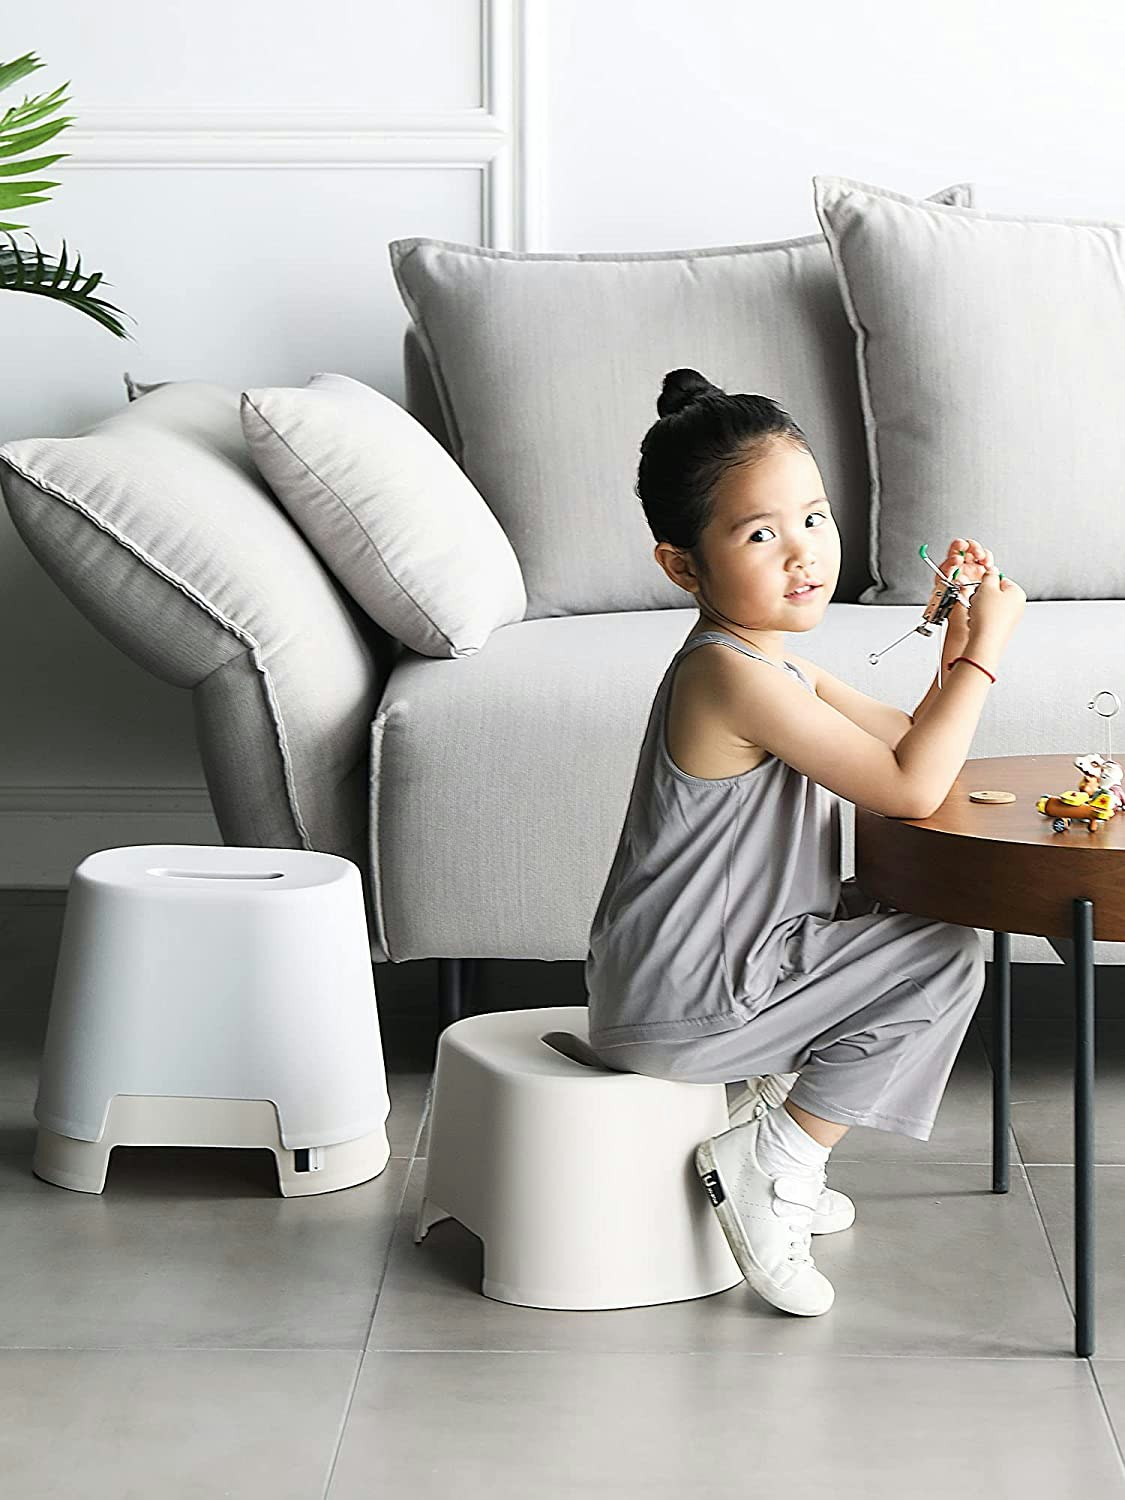 2022年版】おすすめの風呂椅子人気ランキング21選 - 生活用品・家具 - choiFULL｜おすすめの商品ランキング・比較情報メディア